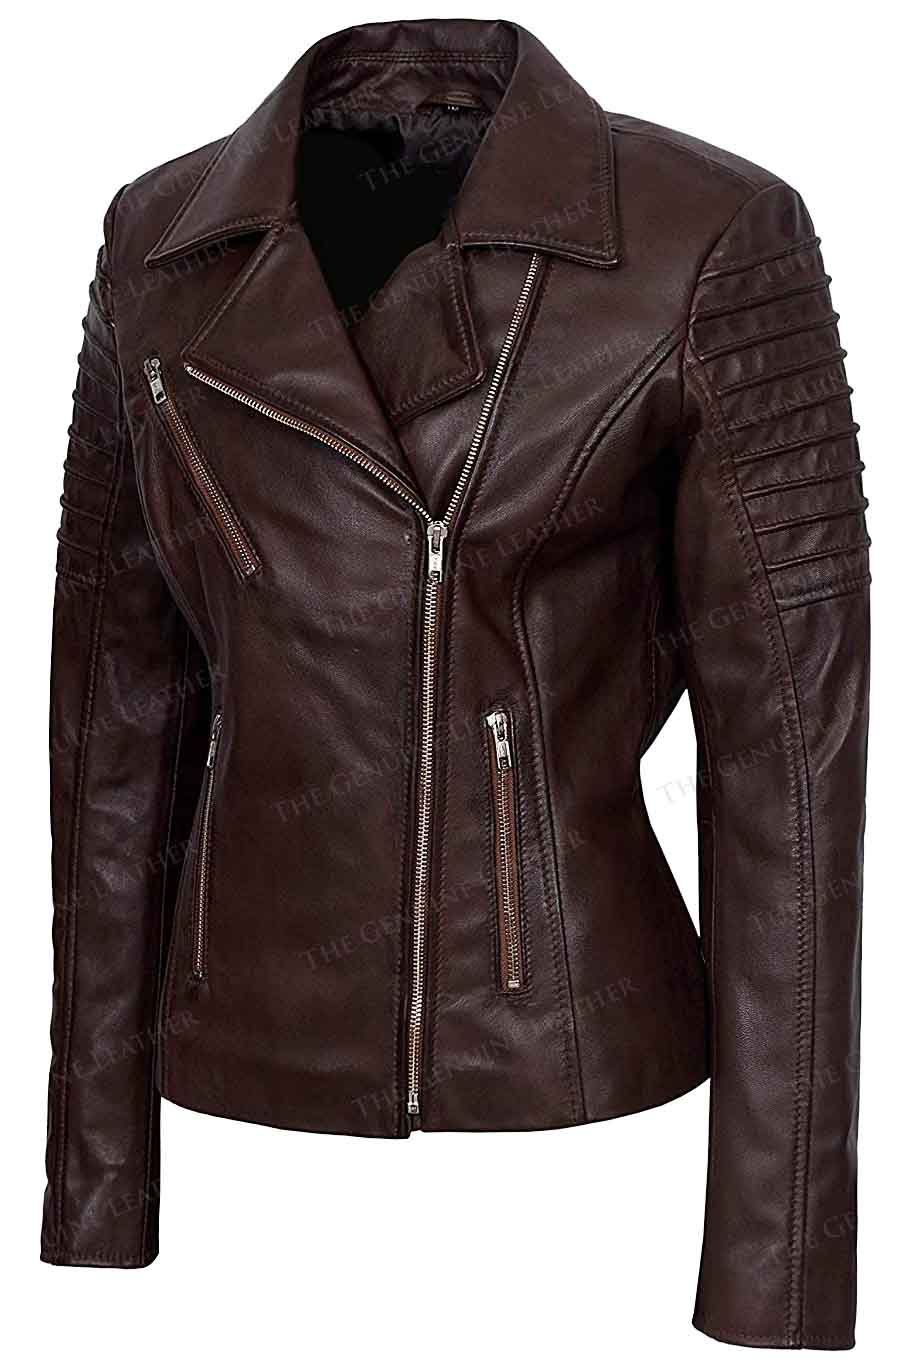 Stylish Women Leather Jacket